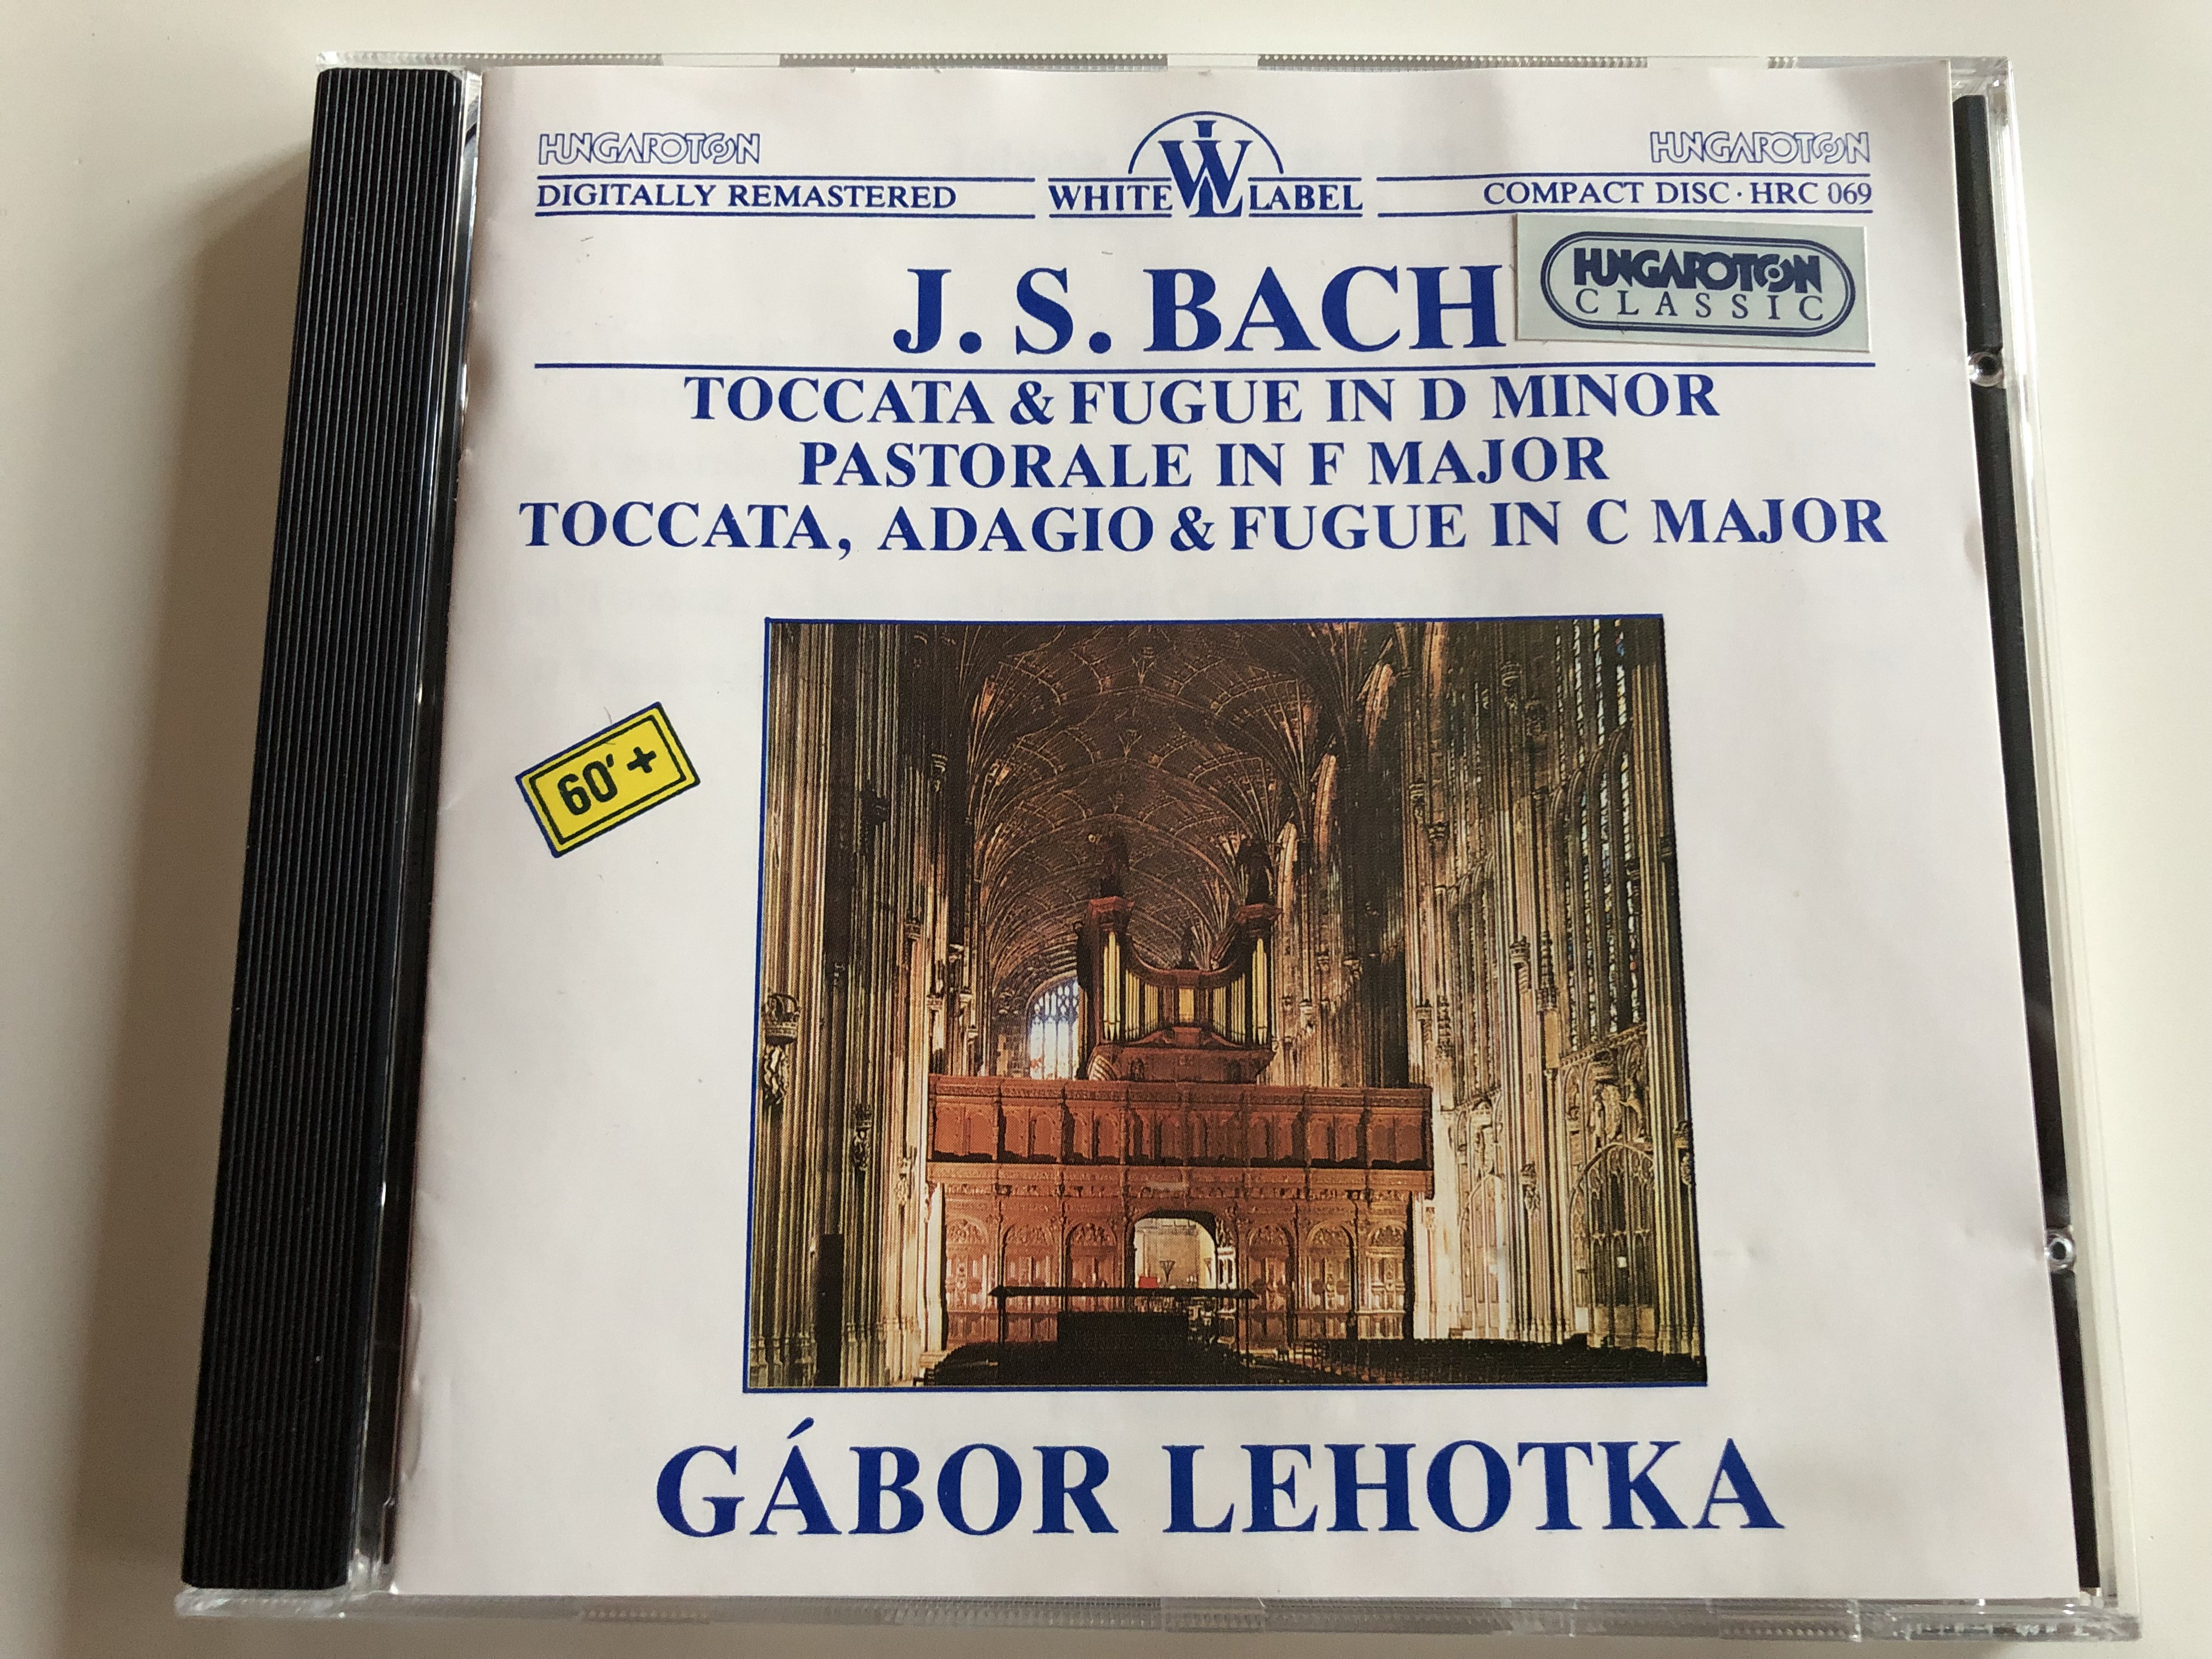 j.-s.-bach-toccata-fugue-in-d-minor-pastorale-in-f-major-toccata-adagio-fugue-in-c-major-gabor-lehotka-hungaroton-classic-audio-cd-1995-stereo-hrc-069-1-.jpg